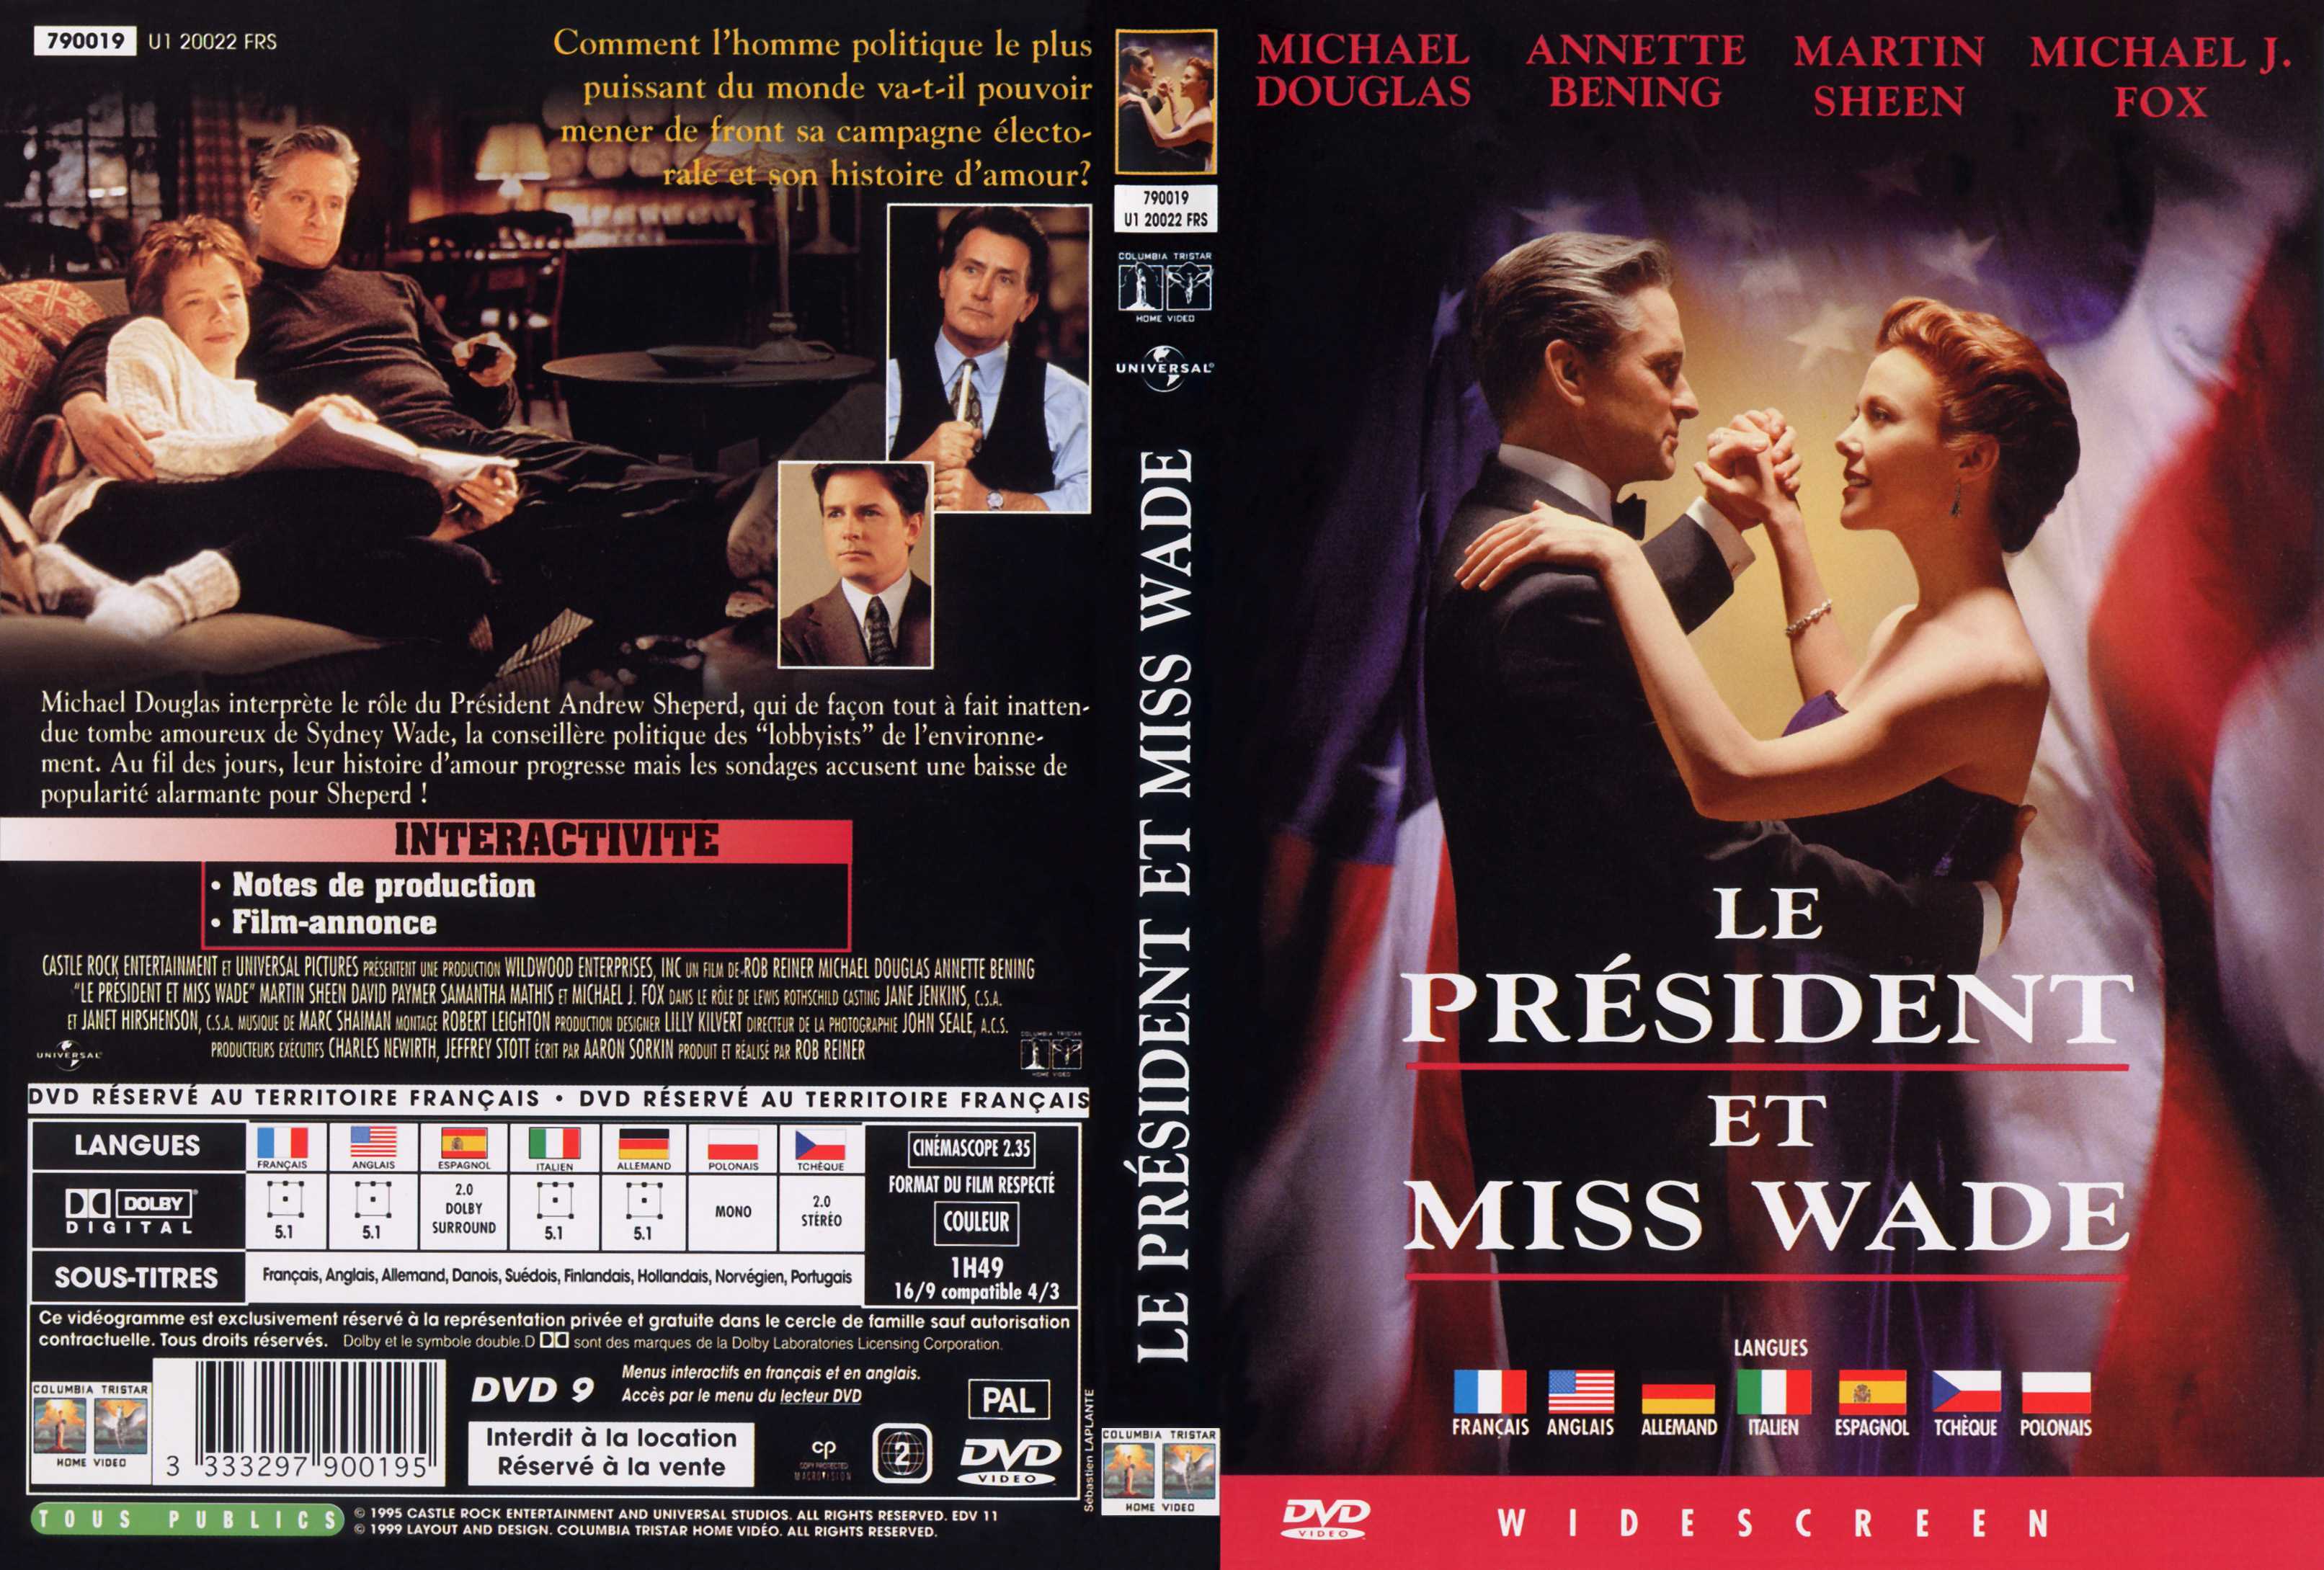 Jaquette DVD Le Prsident & Miss Wade v2